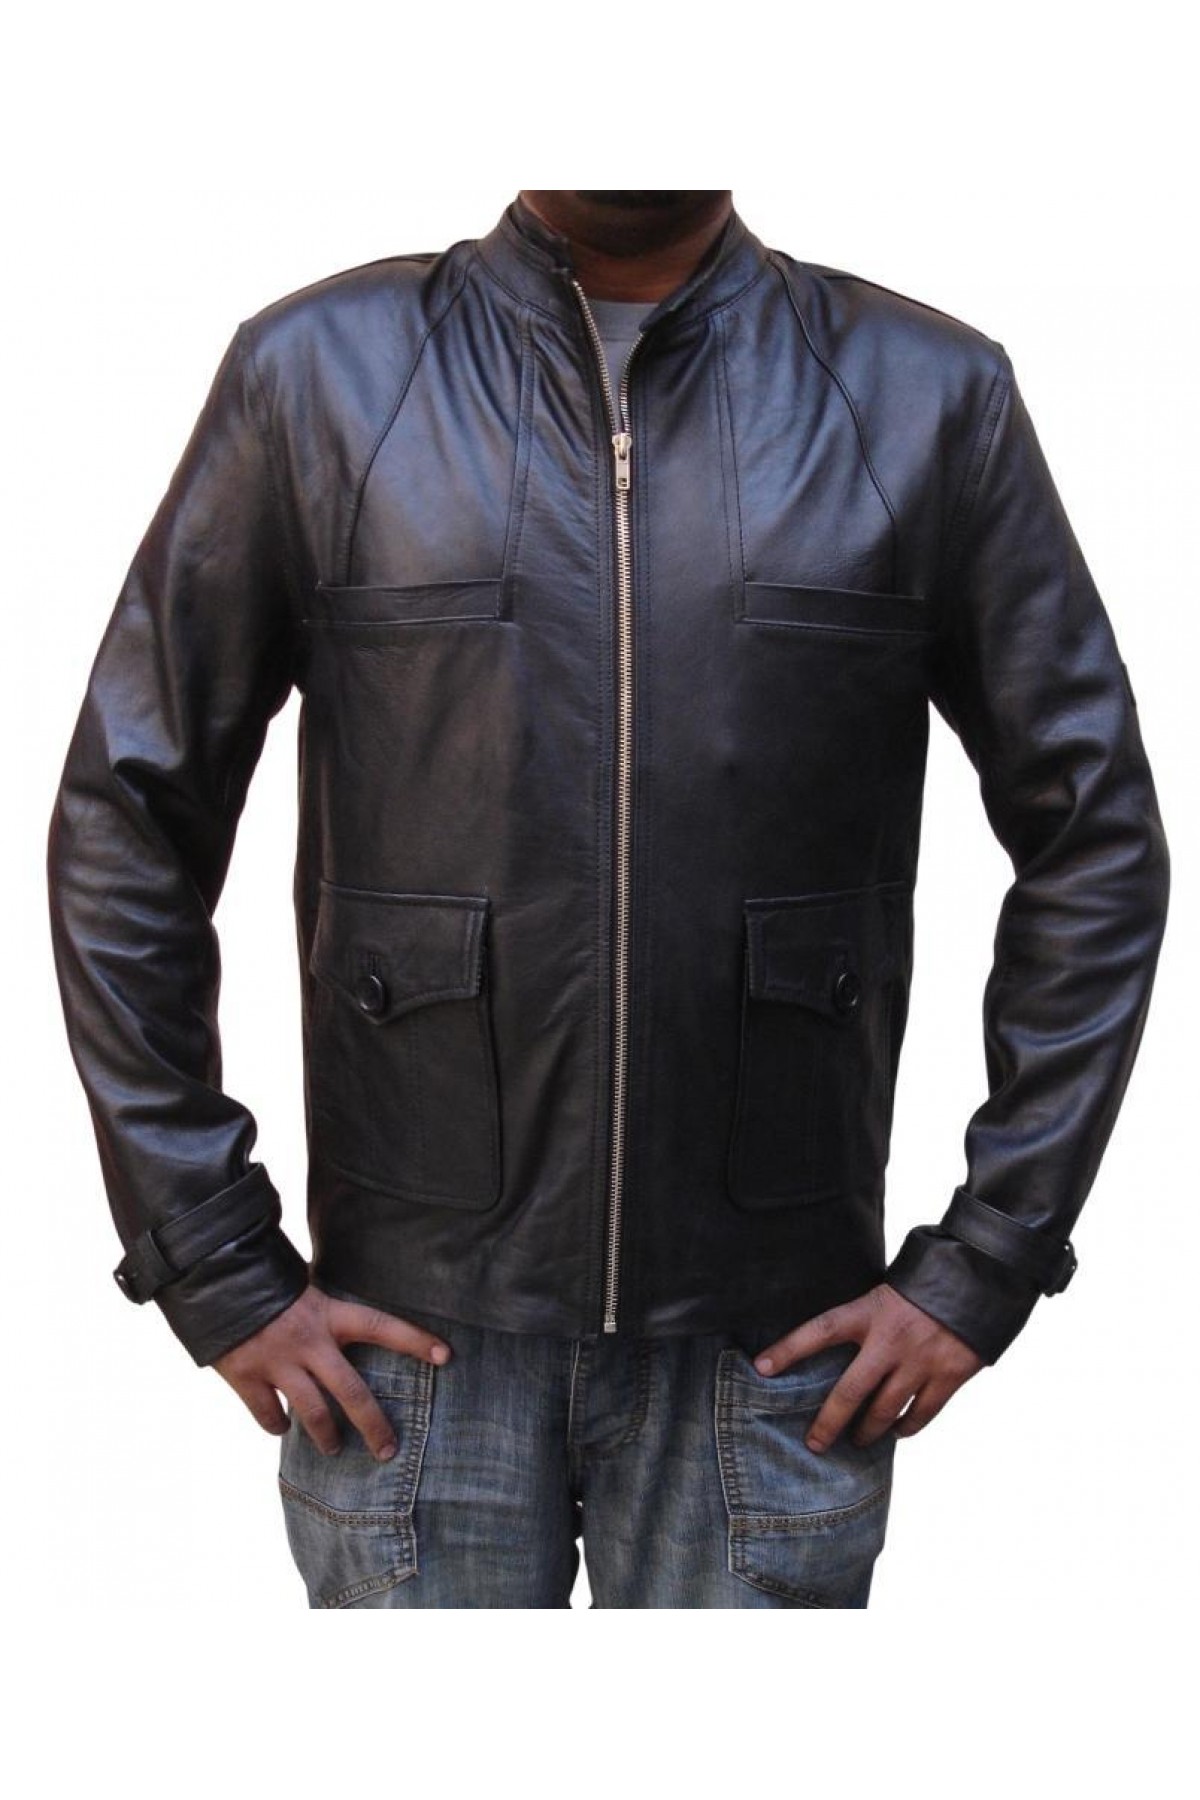 Nick Burkhardt Grimm Leather Jacket - David Giuntoli Jacket